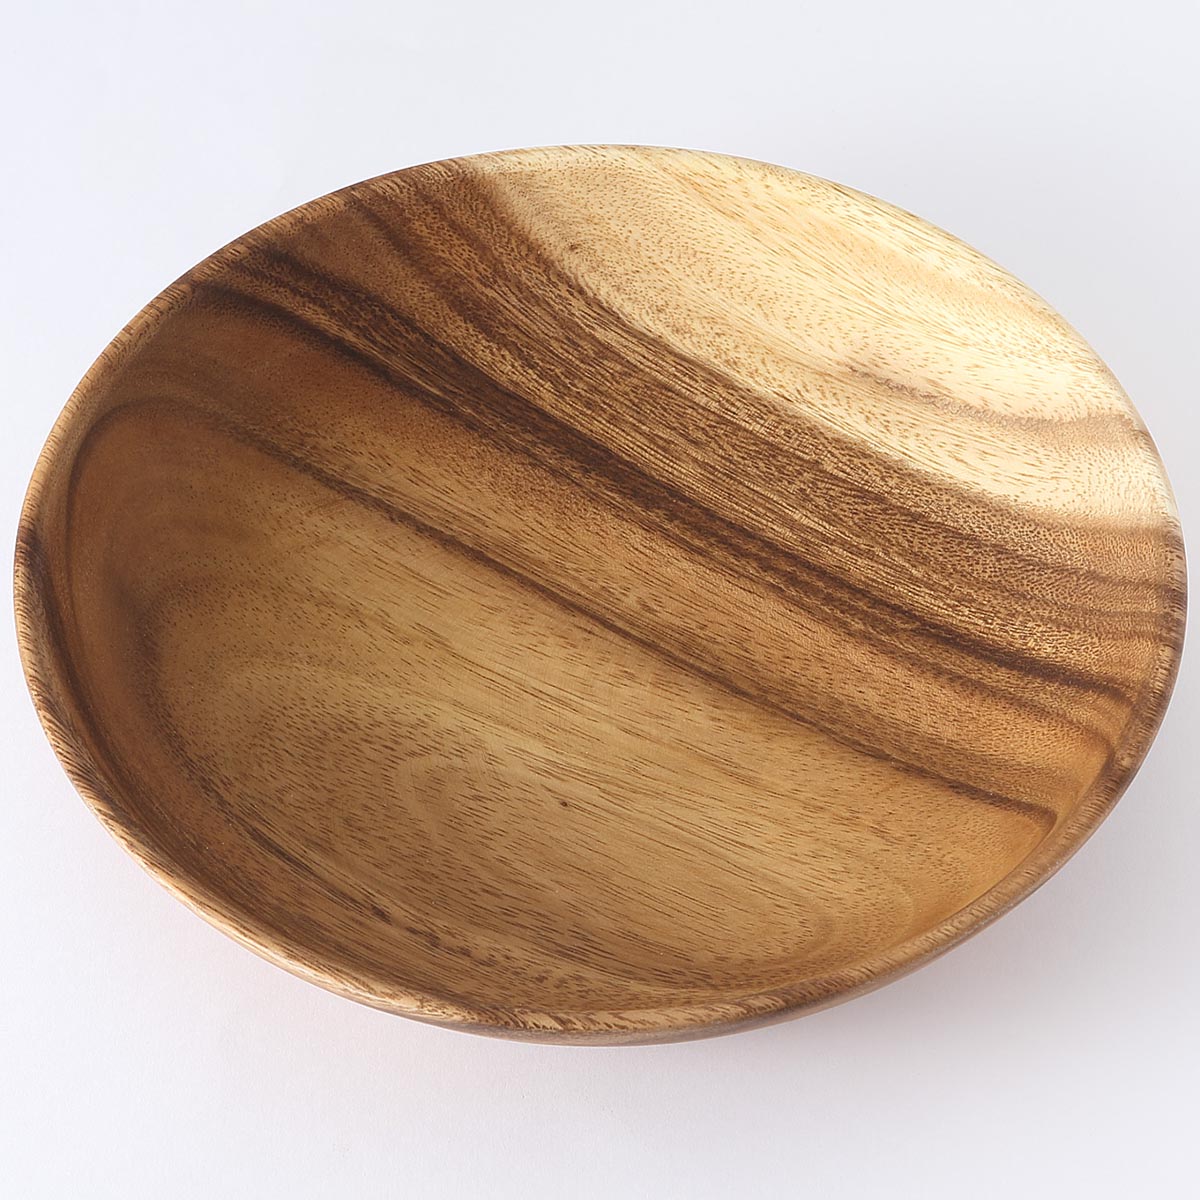 こちらは無印良品の木製深皿。木目の美しいアカシア材を使っていて、カフェ風のテーブルコーディネートにぴったりです。落としても割れないので子供が使うのにもおすすめです。